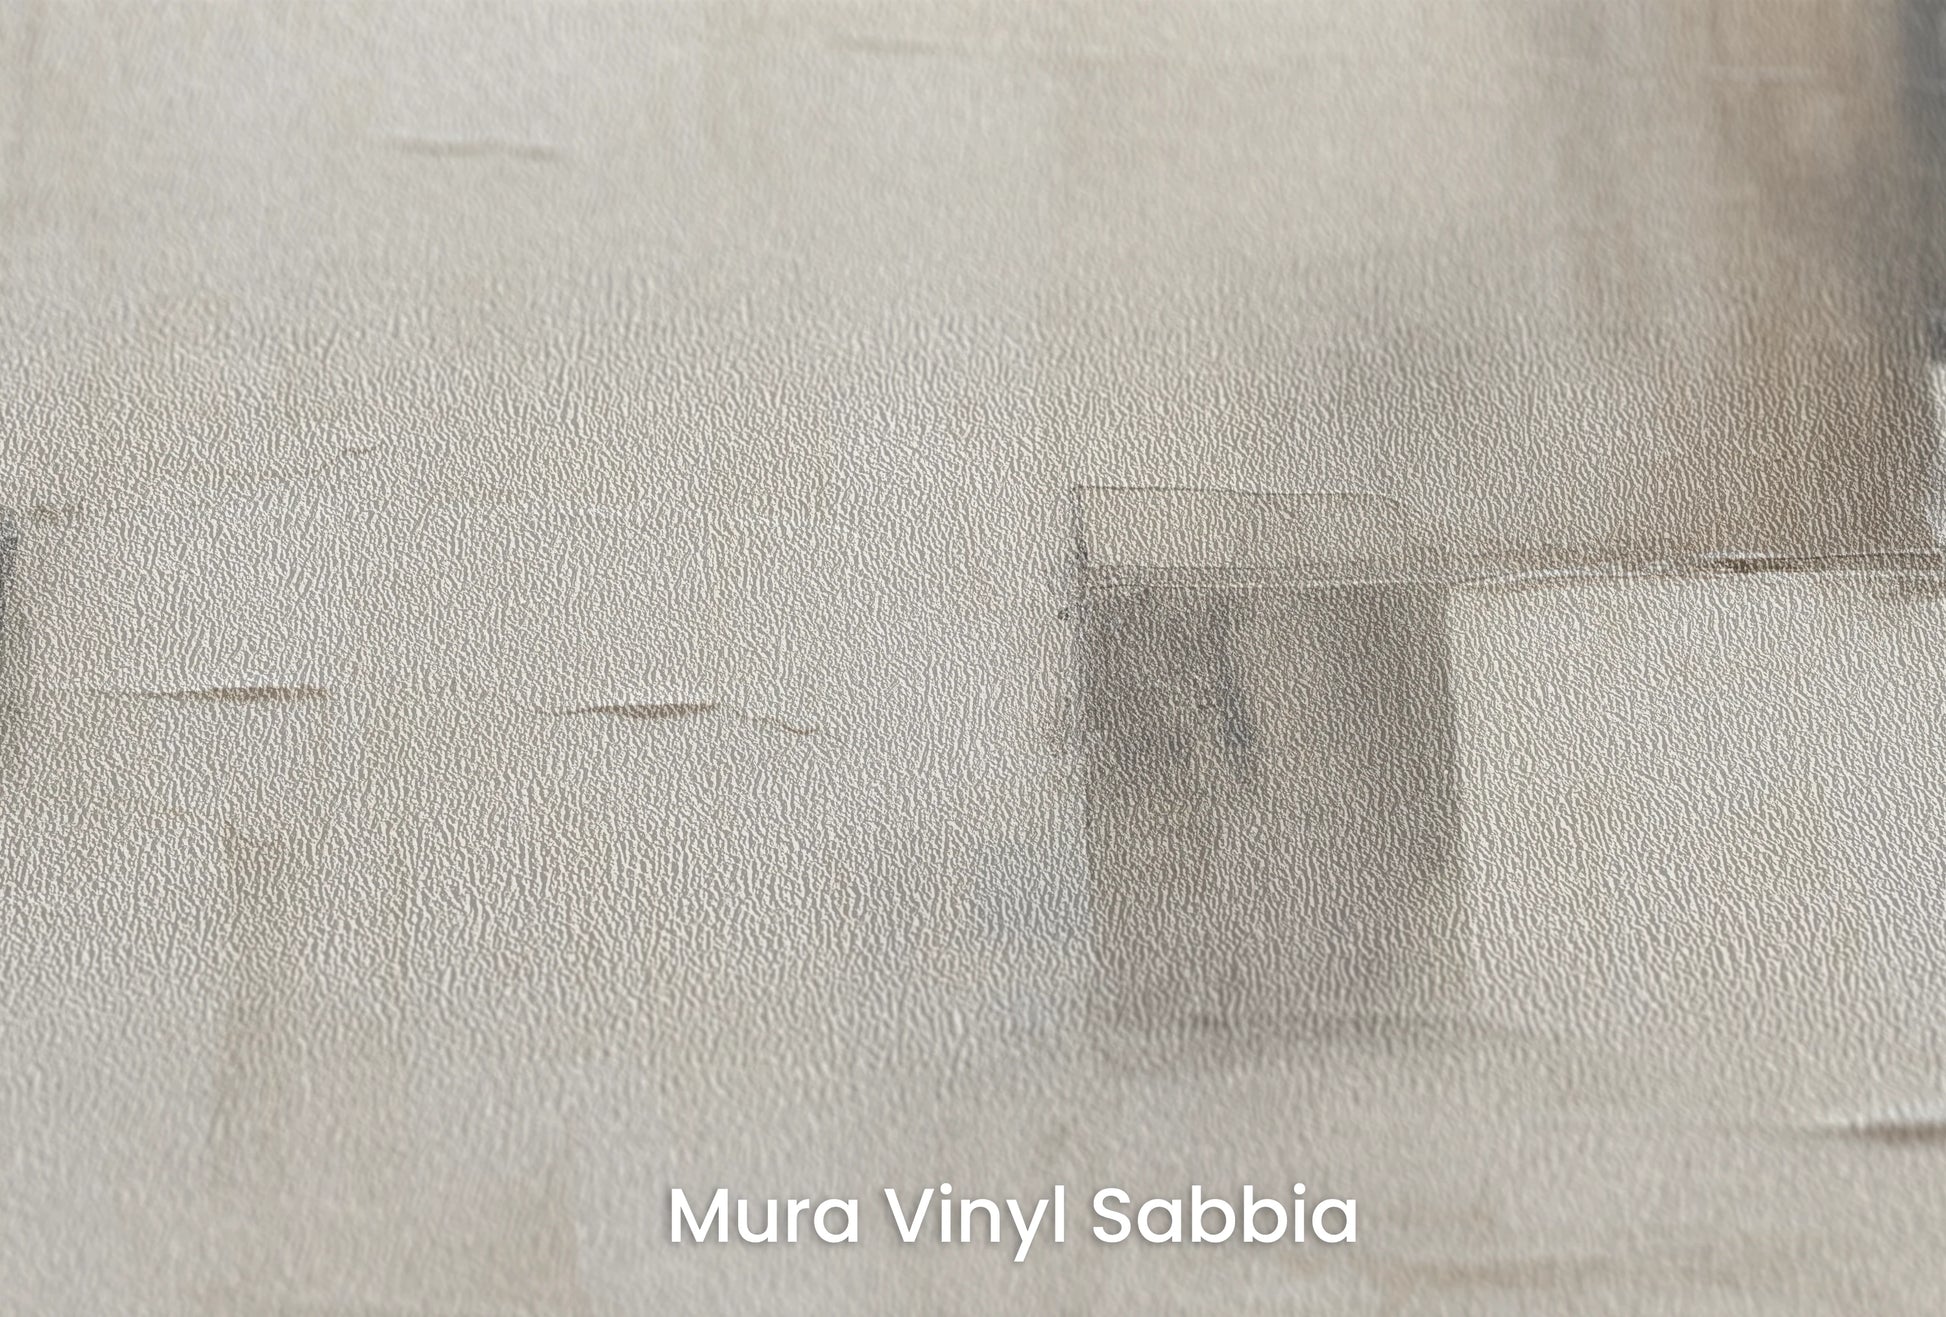 Zbliżenie na artystyczną fototapetę o nazwie Abstract Calm #2 na podłożu Mura Vinyl Sabbia struktura grubego ziarna piasku.